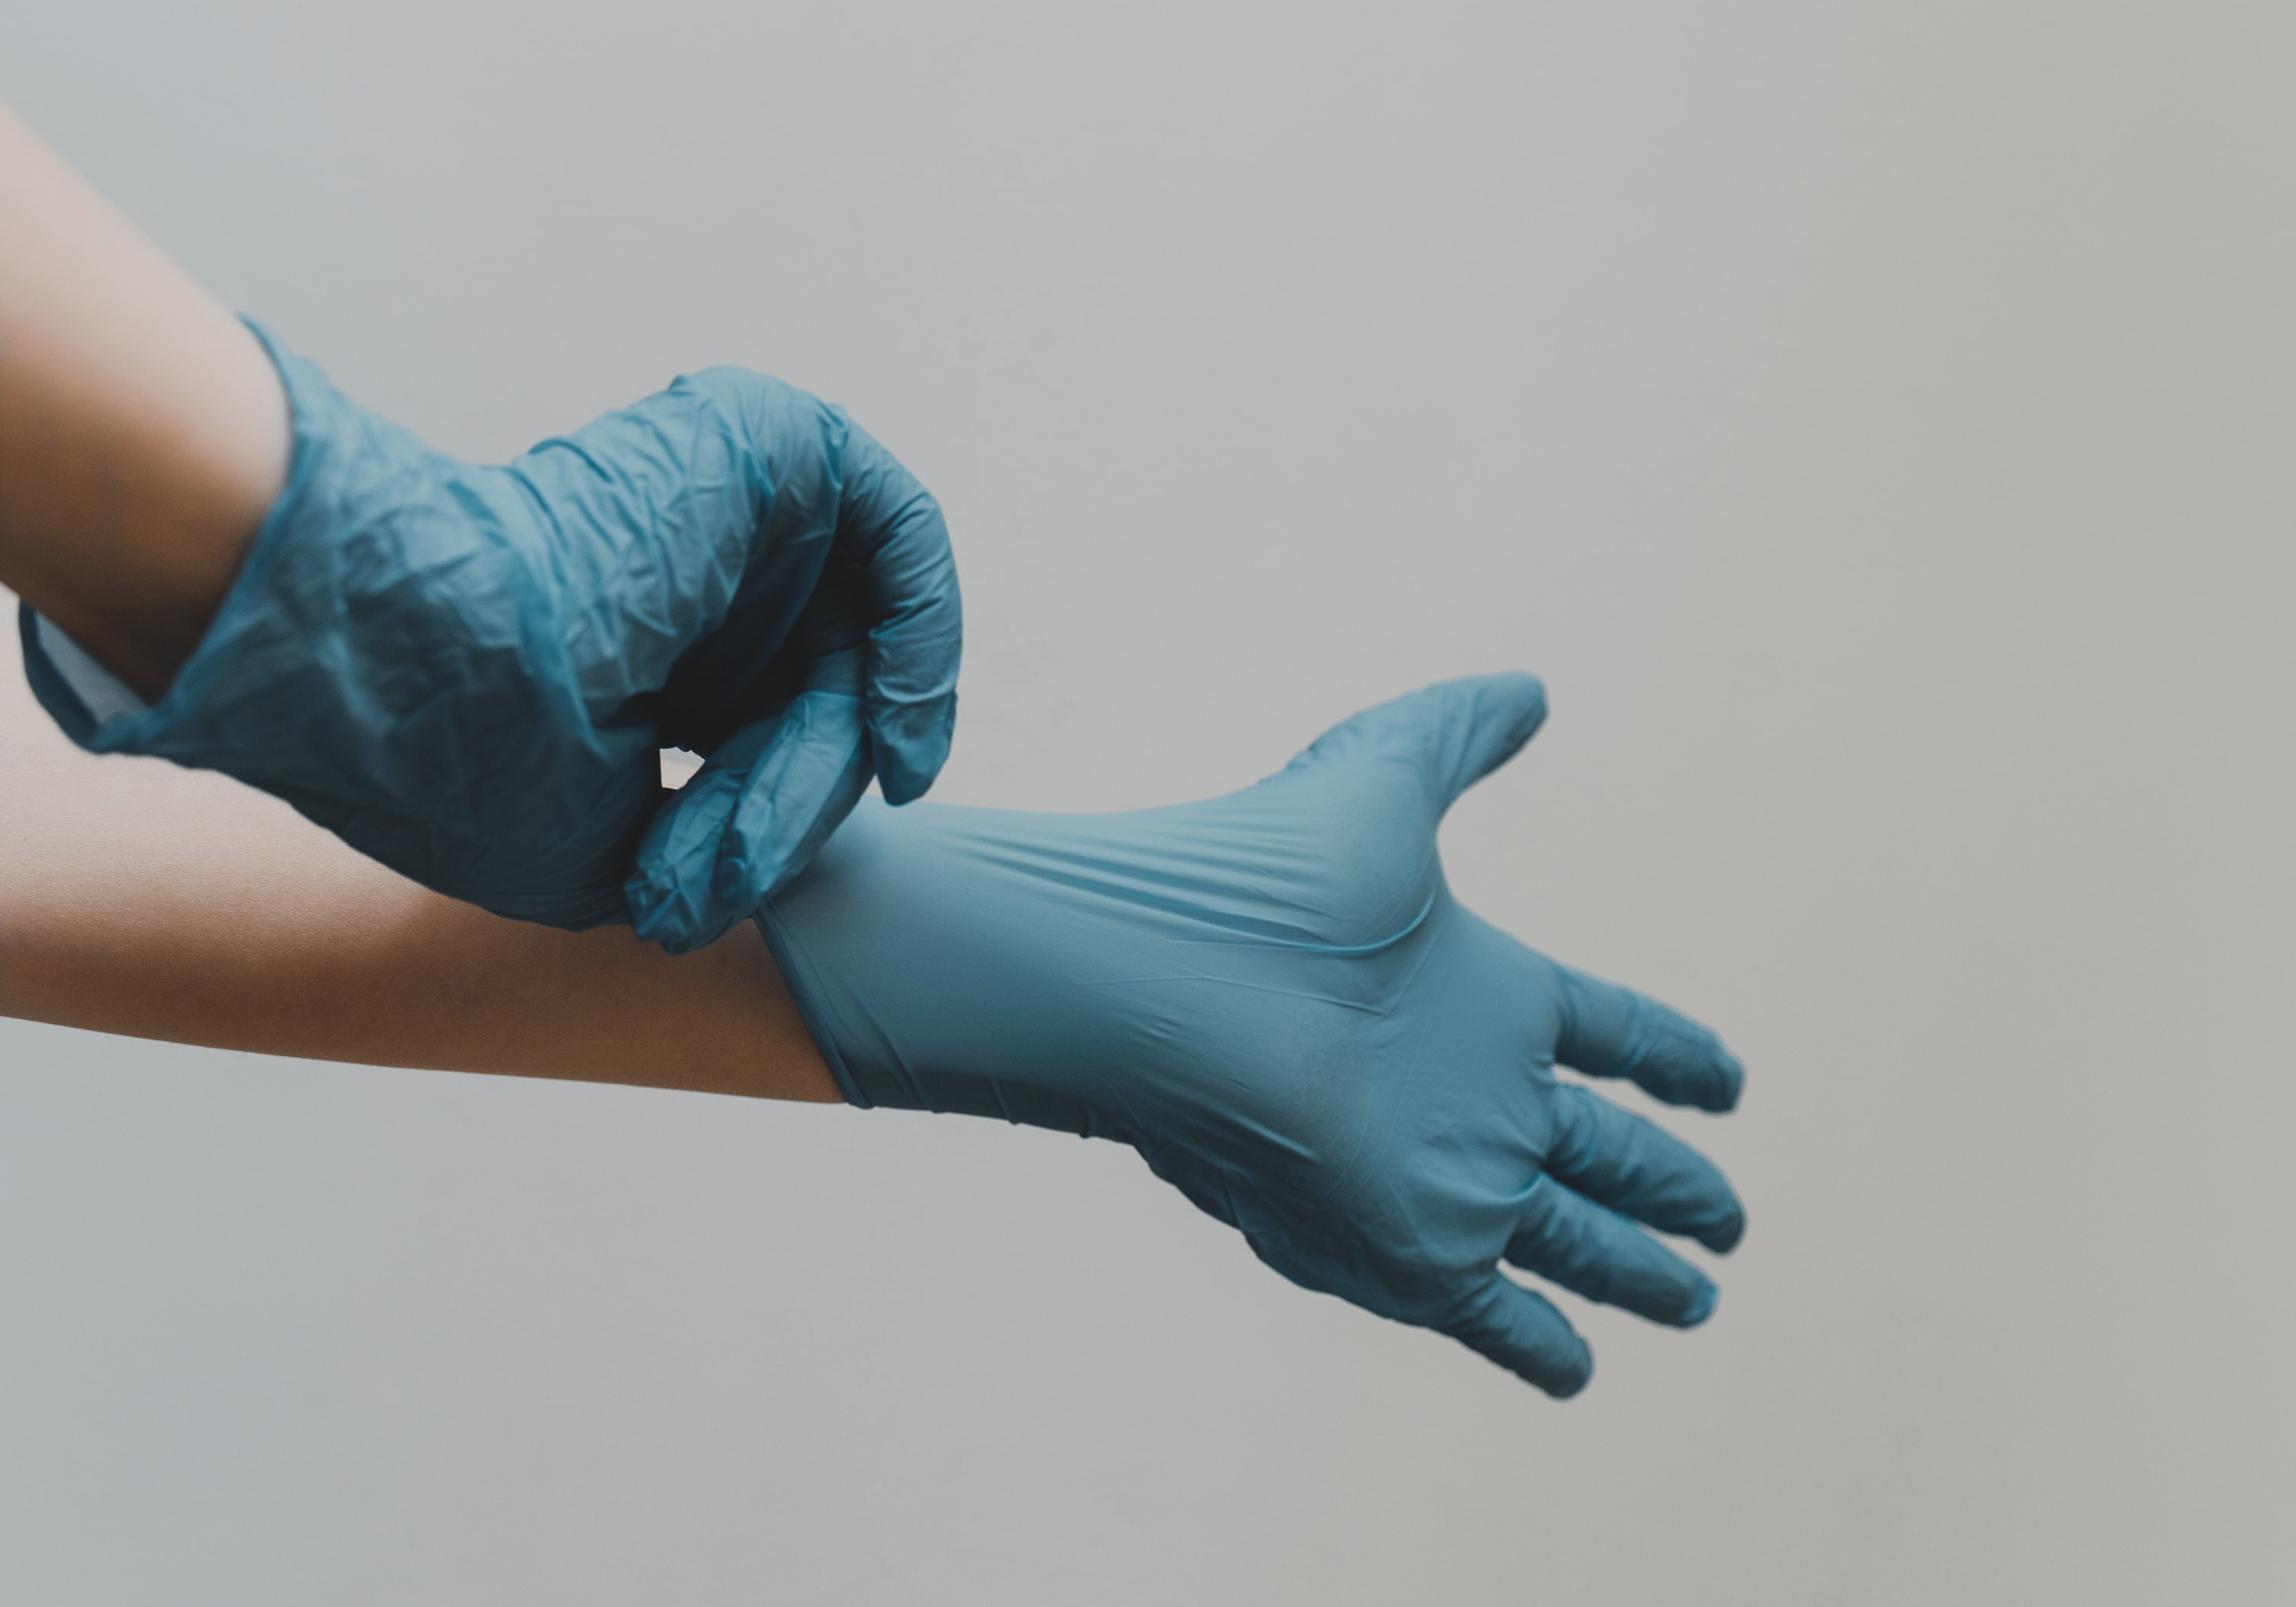 Imagem ilustrativa de pessoa branca colocando luvas cirúrgicas azuis.